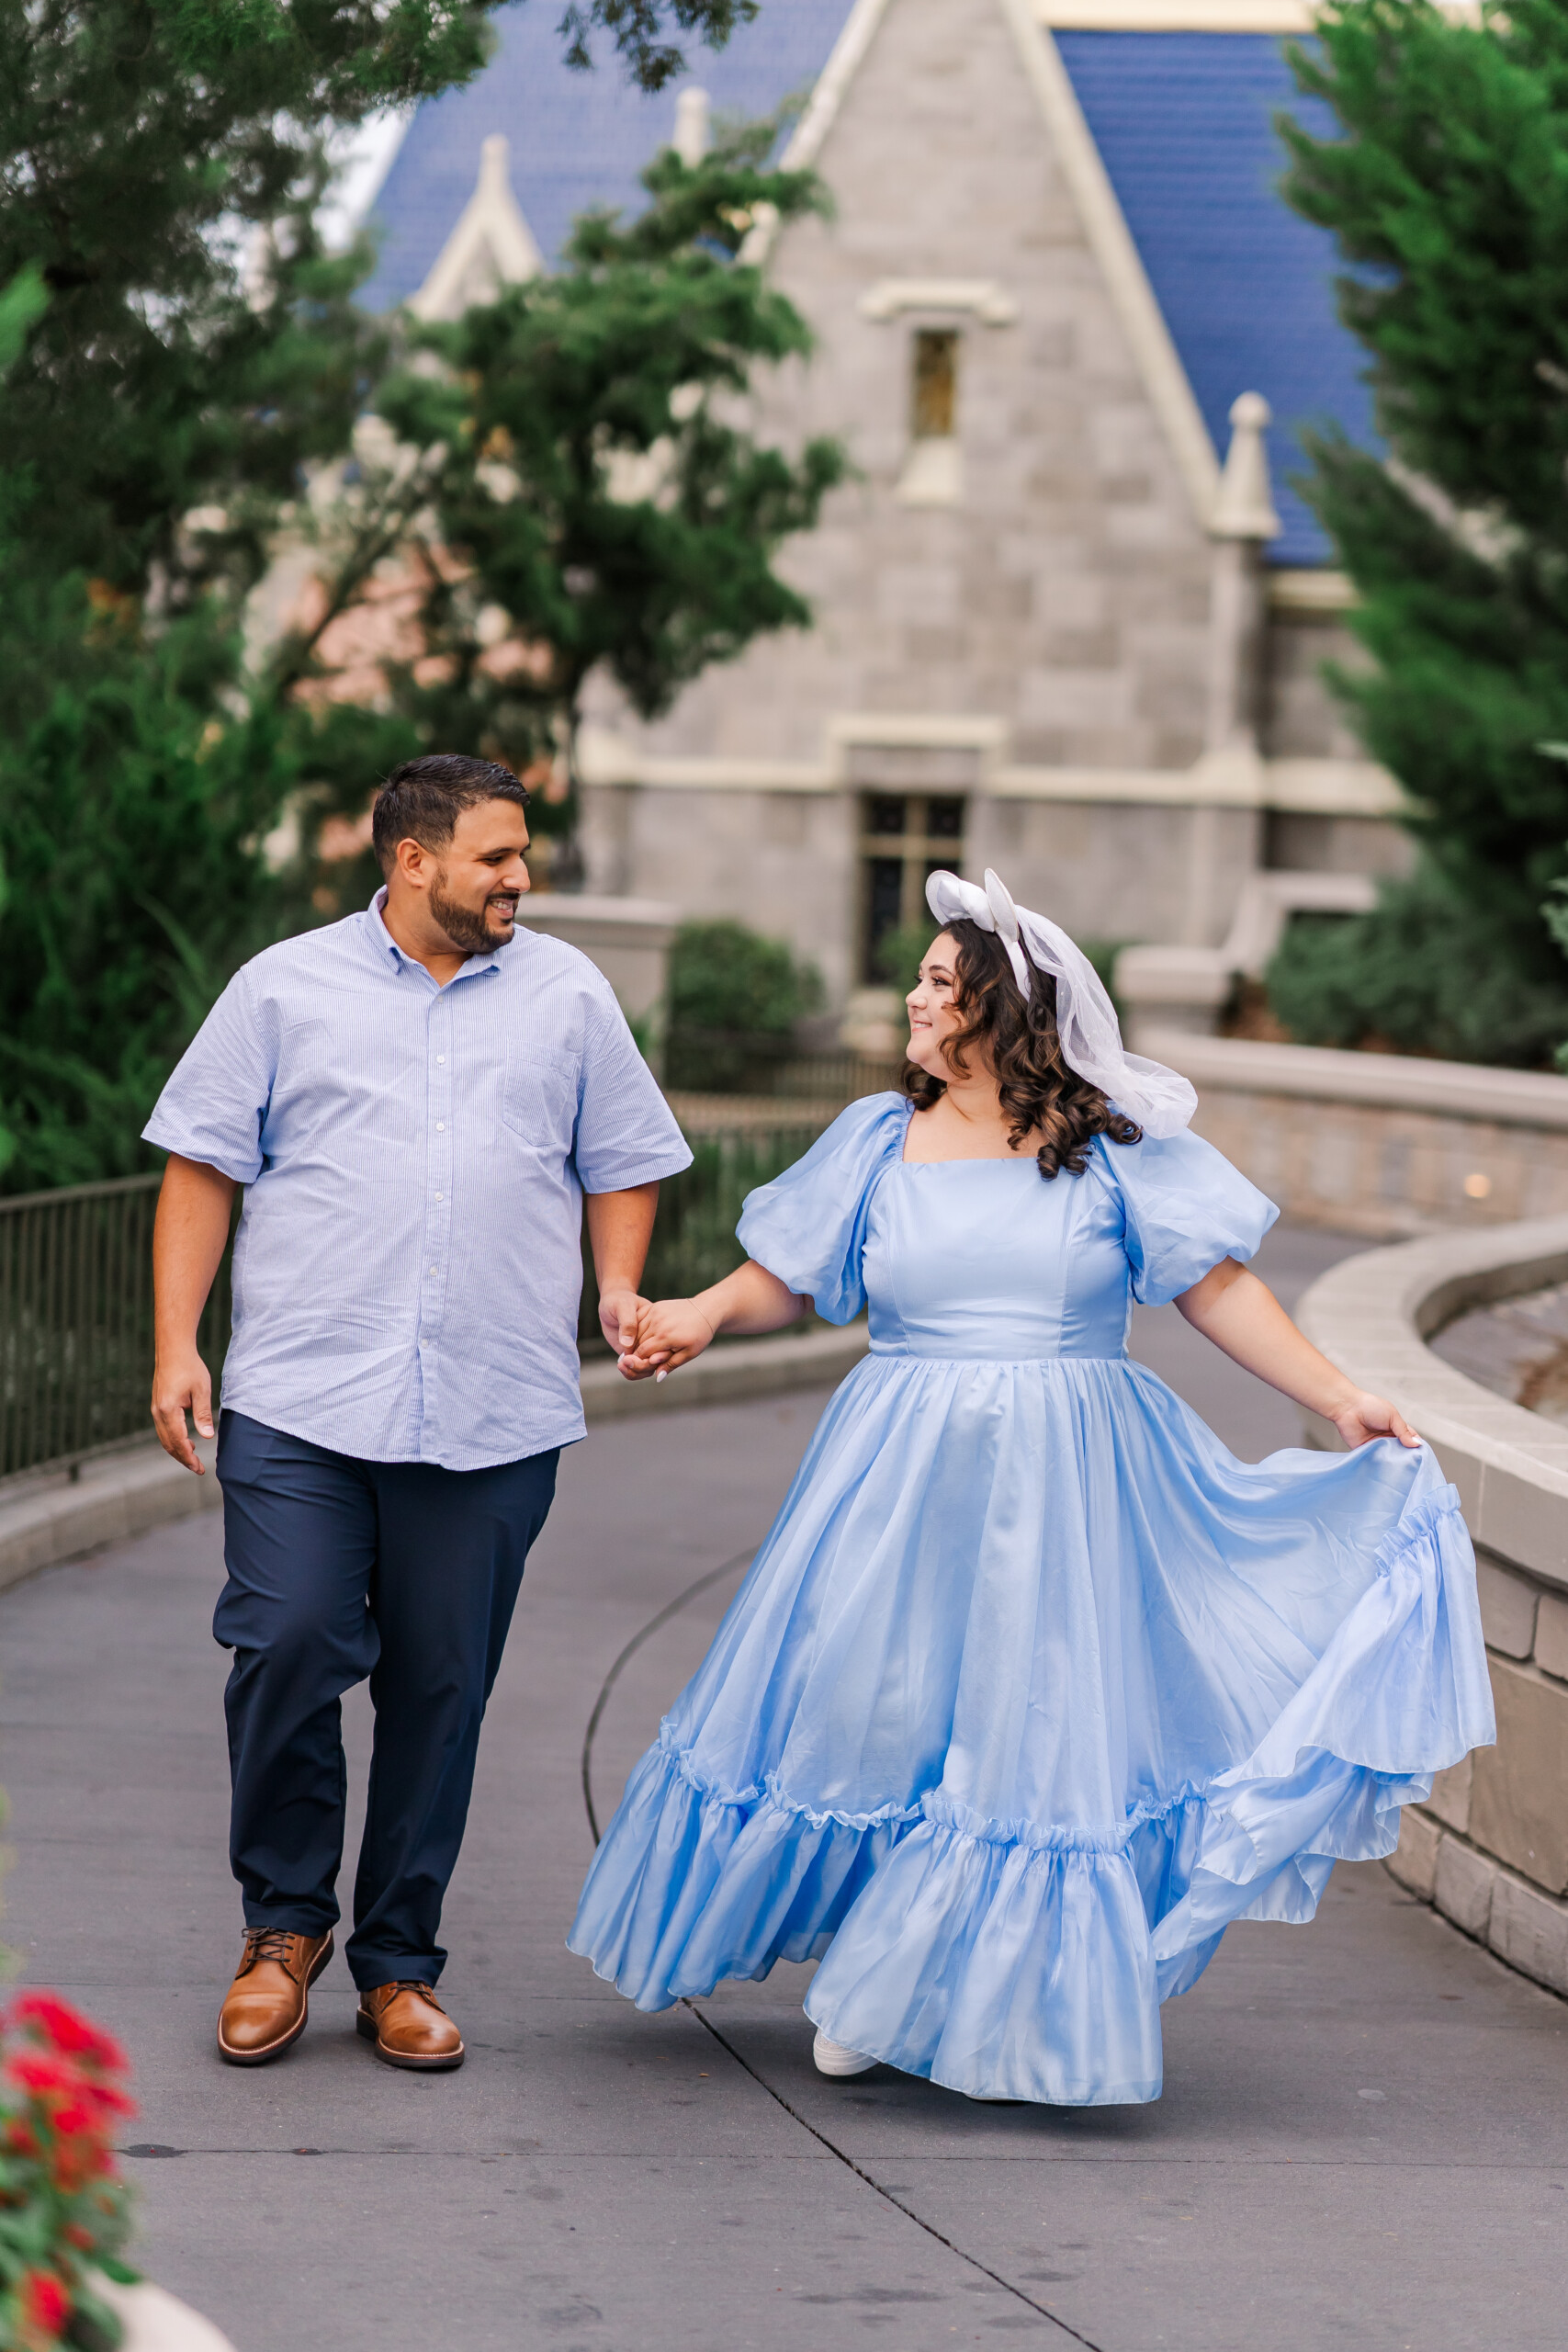 Disney World Engaged Couple